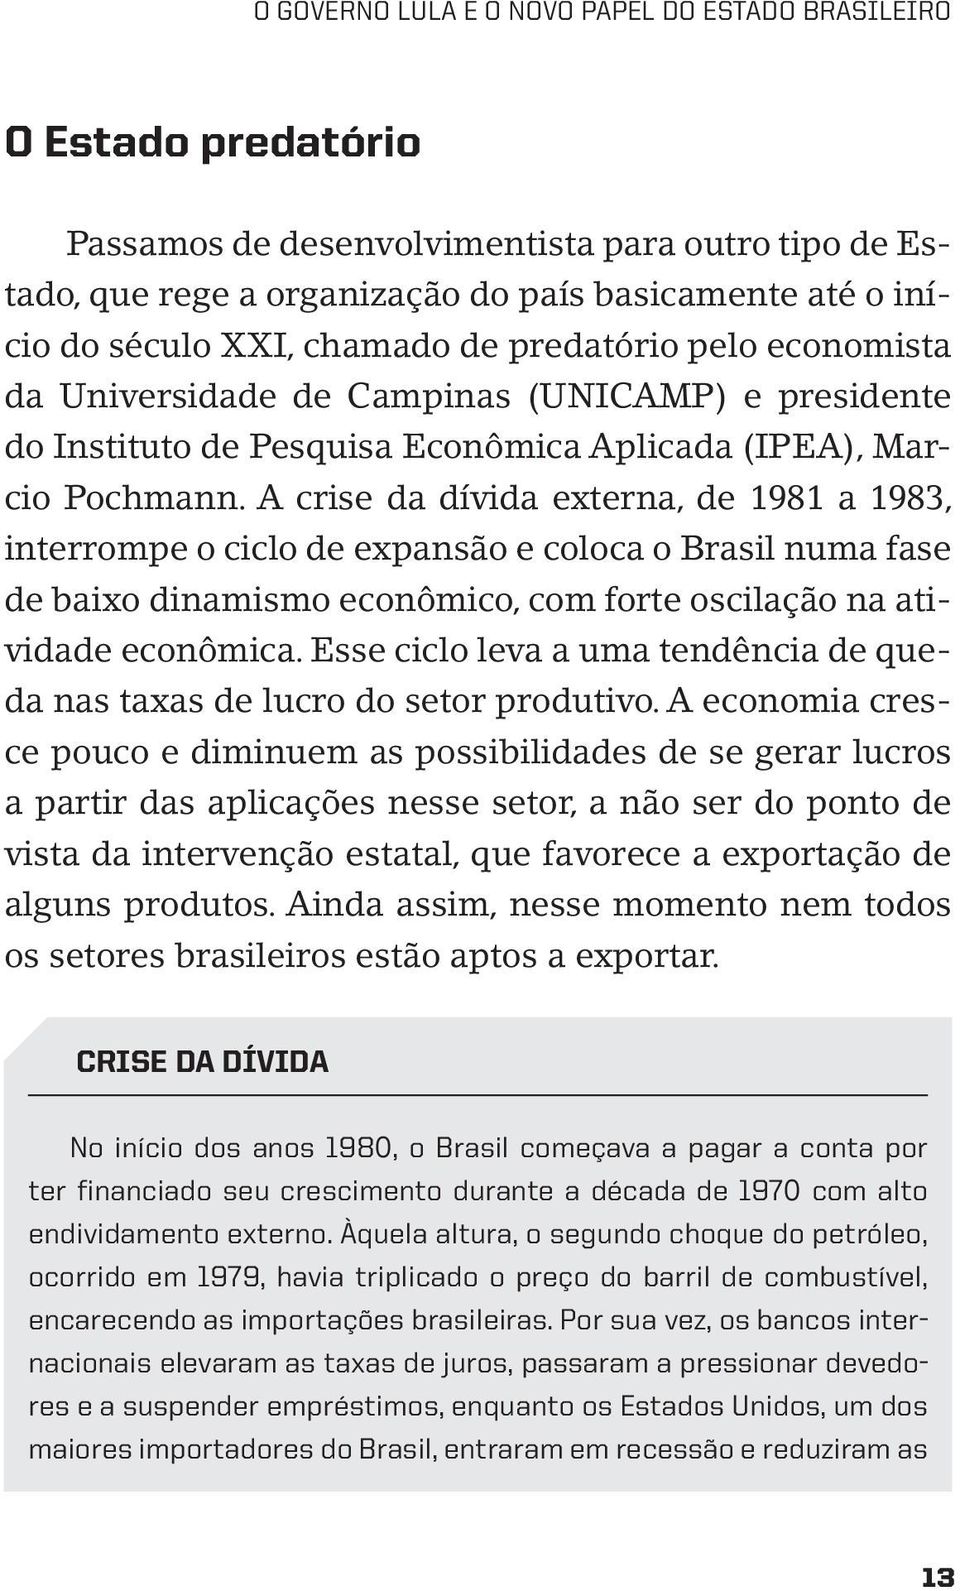 A crise da dívida externa, de 1981 a 1983, interrompe o ciclo de expansão e coloca o Brasil numa fase de baixo dinamismo econômico, com forte oscilação na atividade econômica.